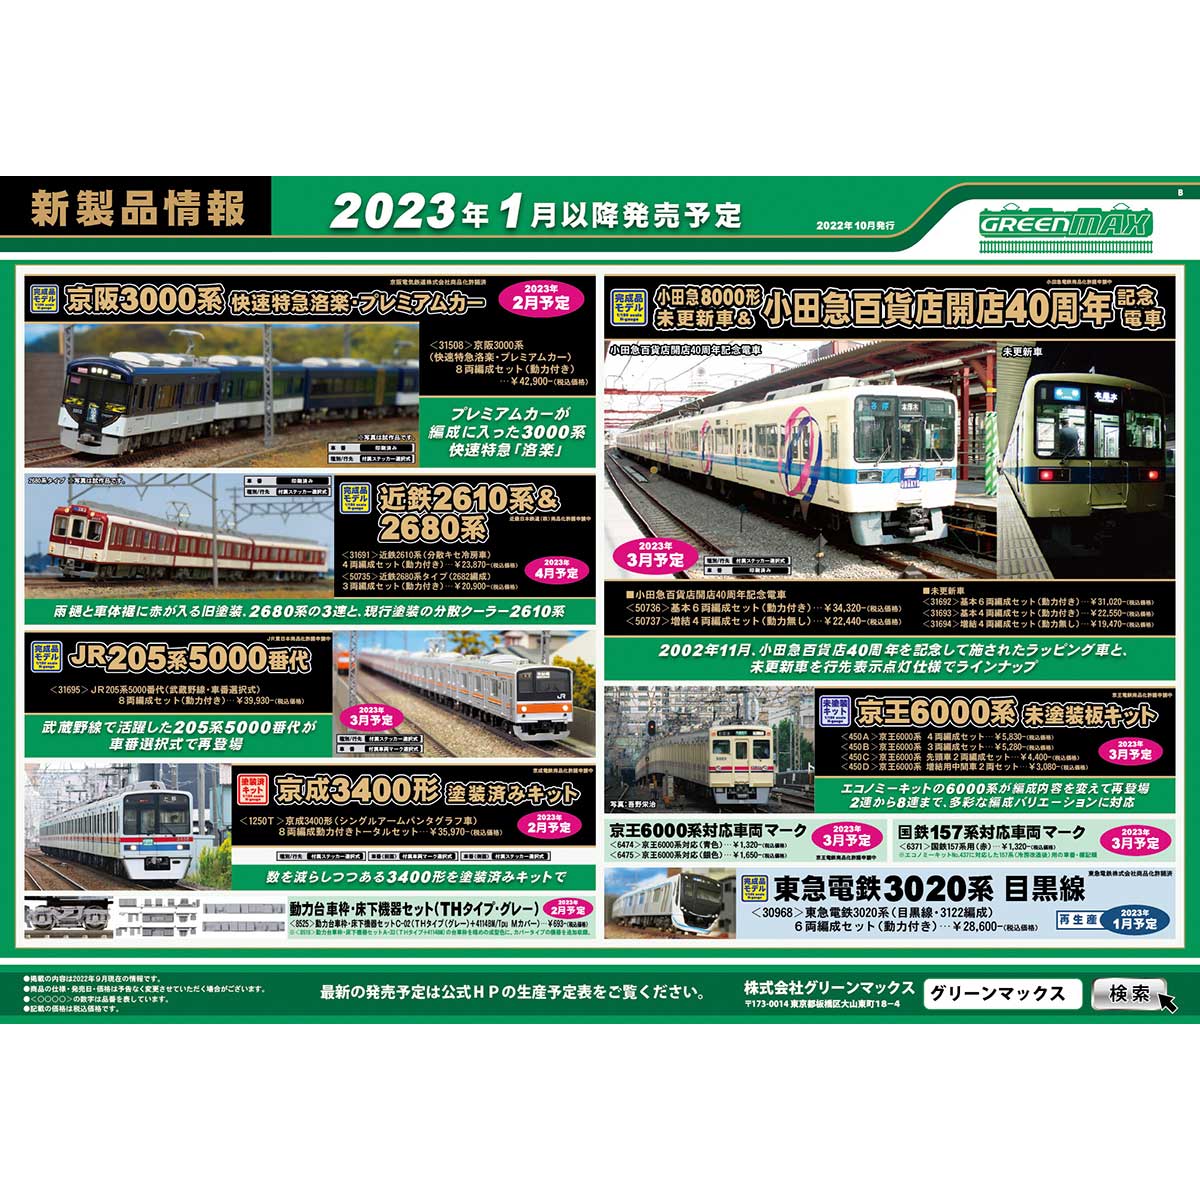 2022年10月19日発行A｜新製品情報ポスター｜Nゲージ鉄道模型のグリーン 